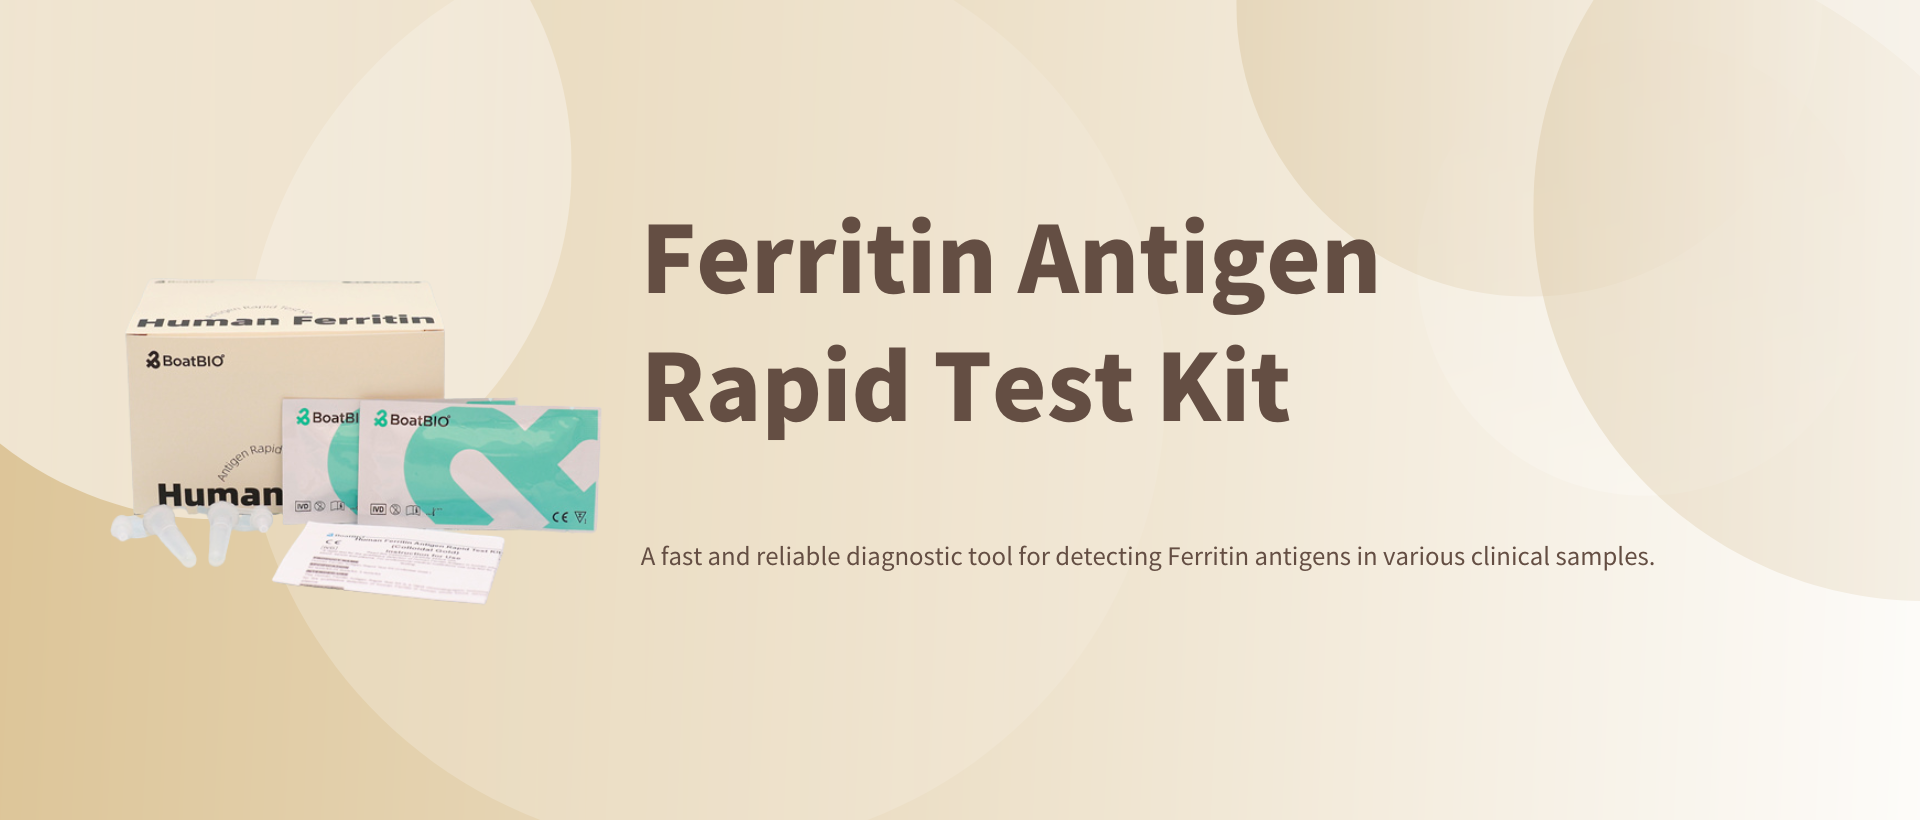 Ferritin Antigen Rapid Test Kit